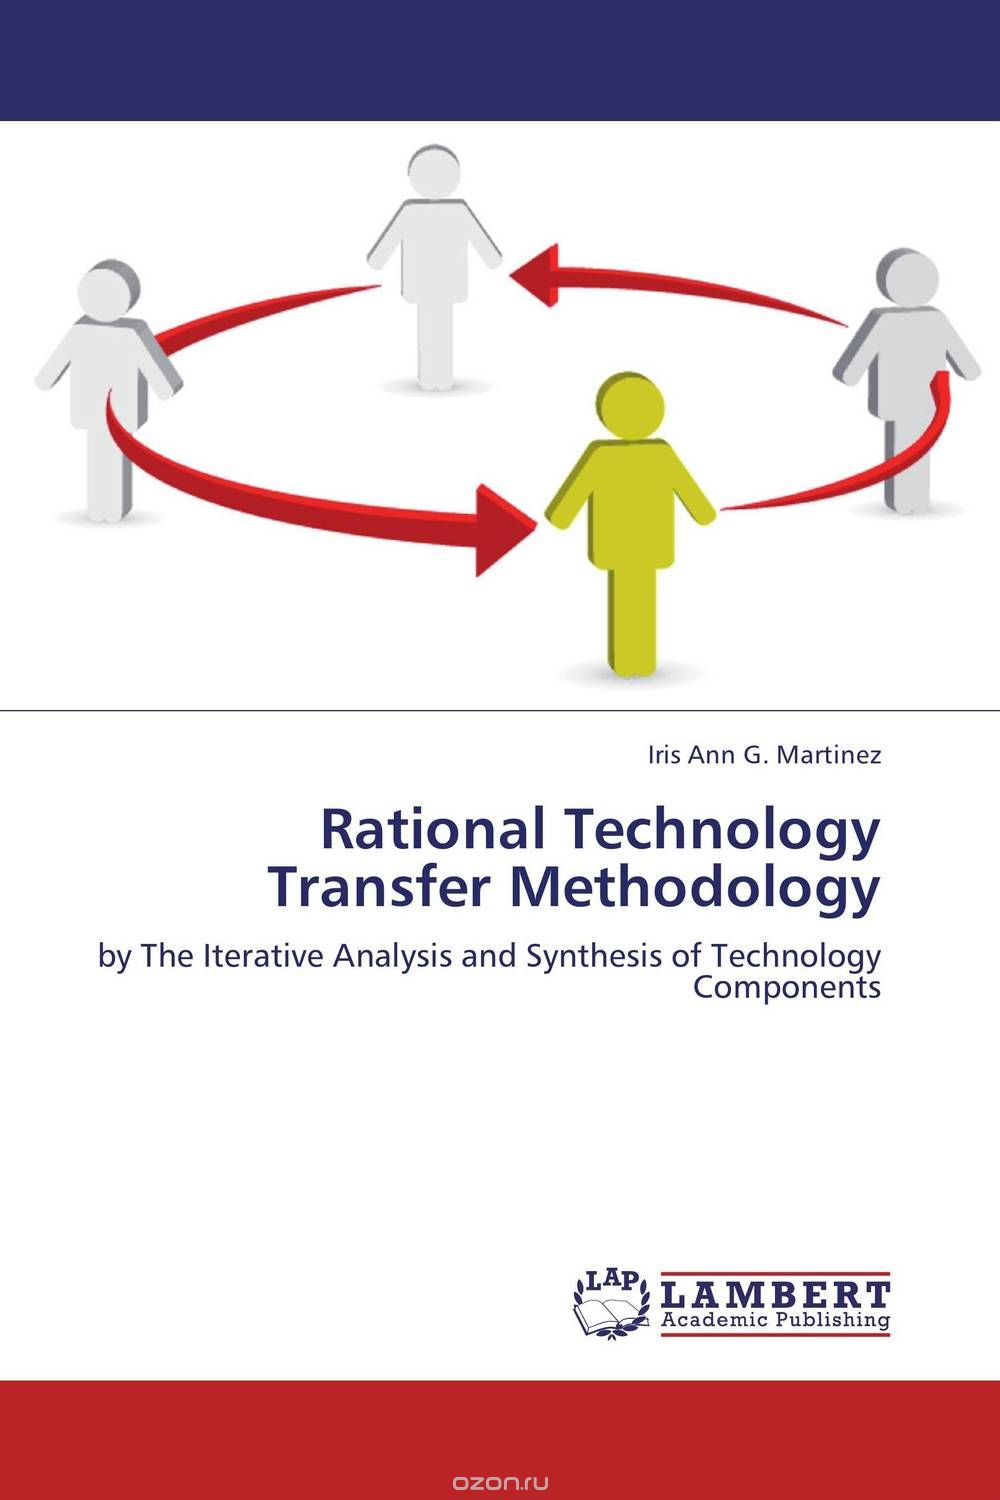 Скачать книгу "Rational Technology Transfer Methodology"